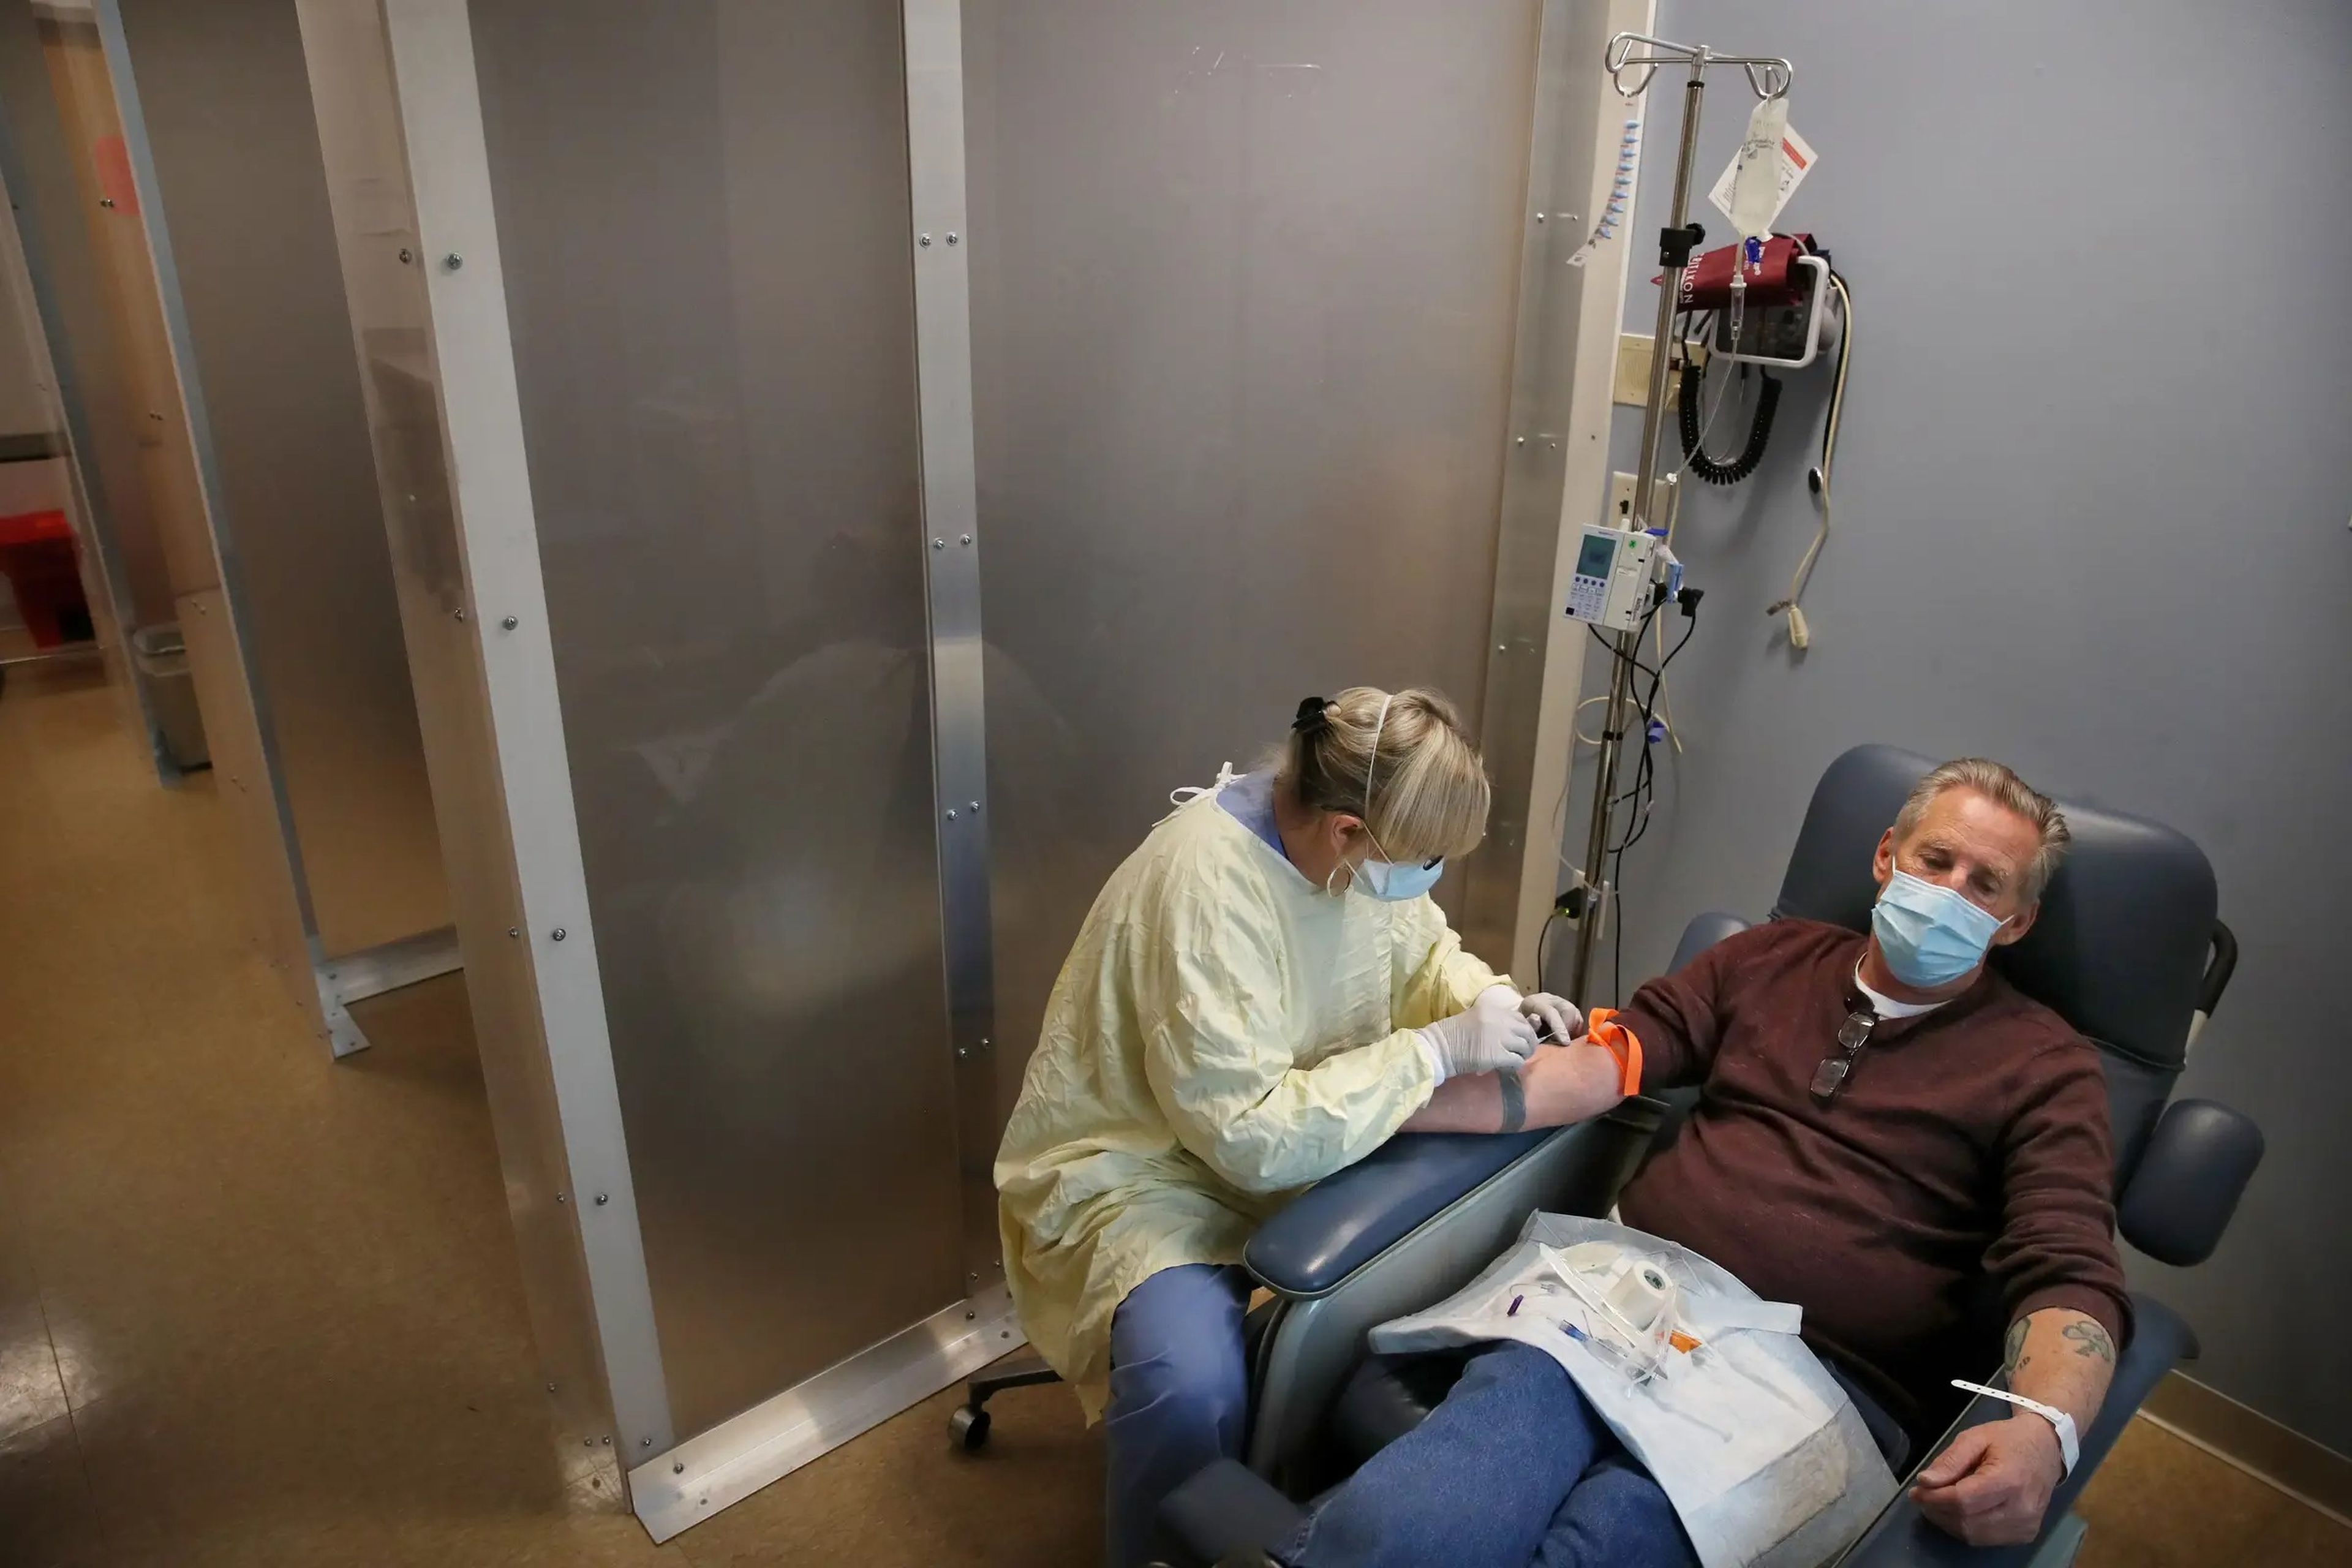 La enfermera Janet Gilleran se prepara para tratar al paciente con coronavirus Mike Mokler con Bamlanivimab, un anticuerpo monoclonal, en la Clínica de Infecciones Respiratorias del Tufts Medical Center en Boston Massachusetts el 31 de diciembre de 2020.